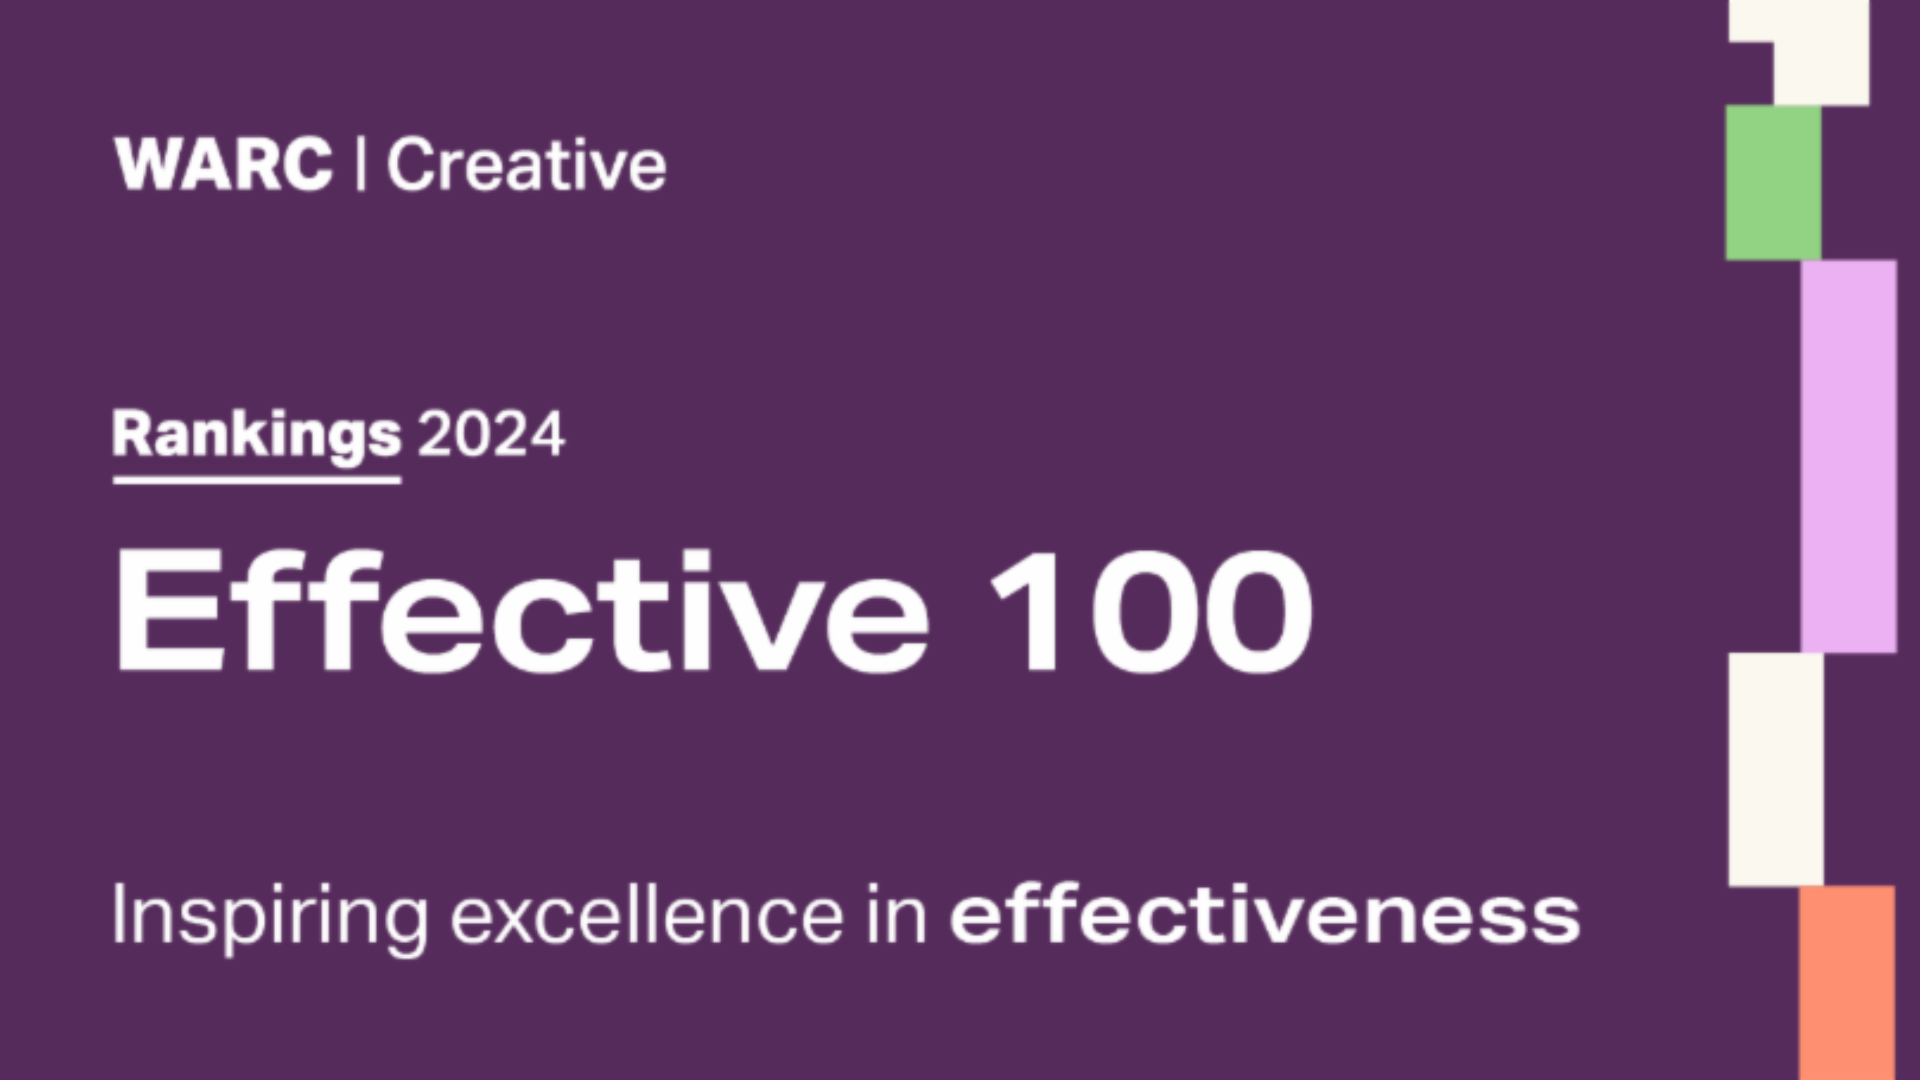 AlmapBBDO é a terceira agência criativa mais eficaz do mundo no WARC Effective 100